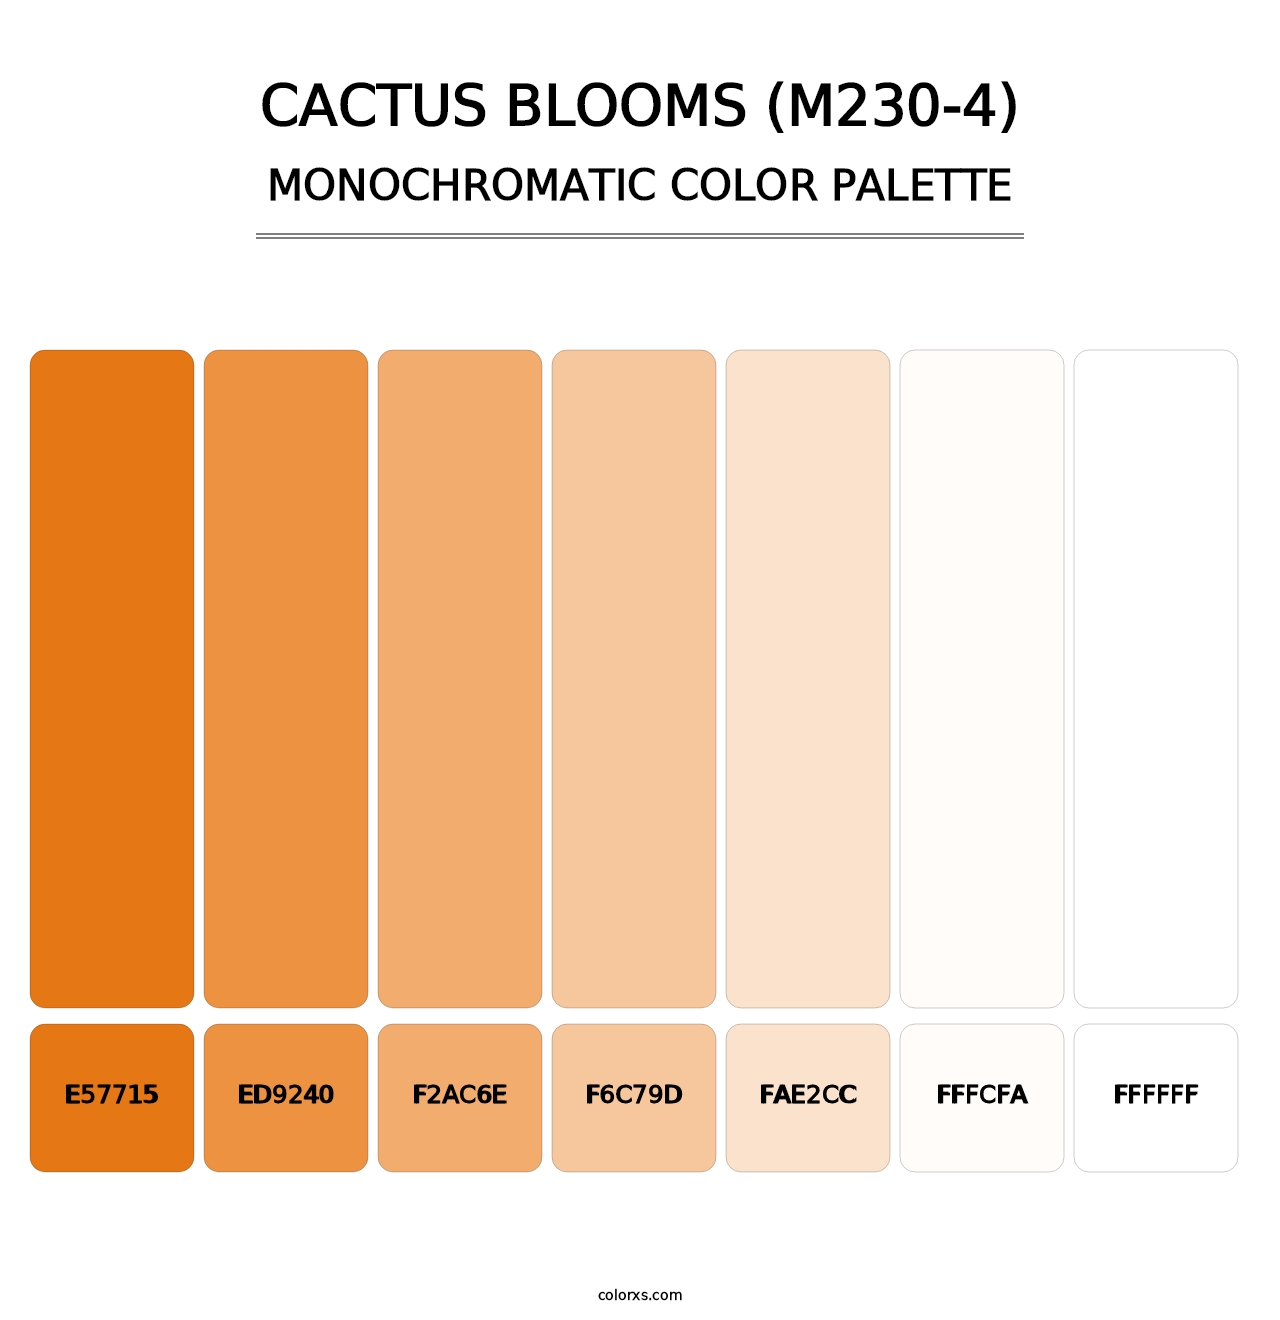 Cactus Blooms (M230-4) - Monochromatic Color Palette